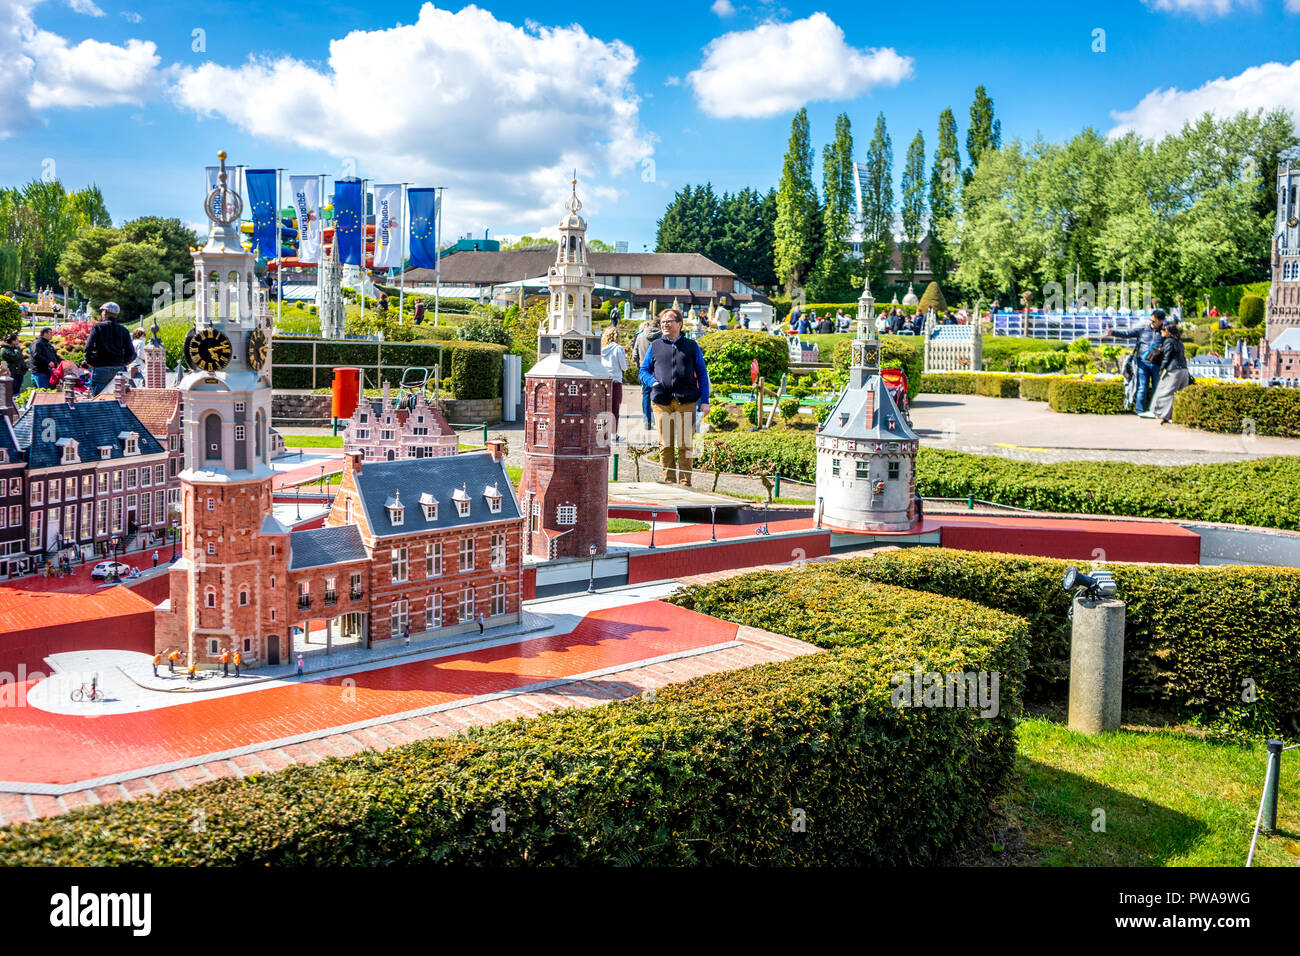 Bruxelles, Belgique - 17 Avril 2017 : Miniatures au parc Mini-Europe - reproduction de la maison Doelenkade à Hoorn, Pays-Bas, Europe Banque D'Images